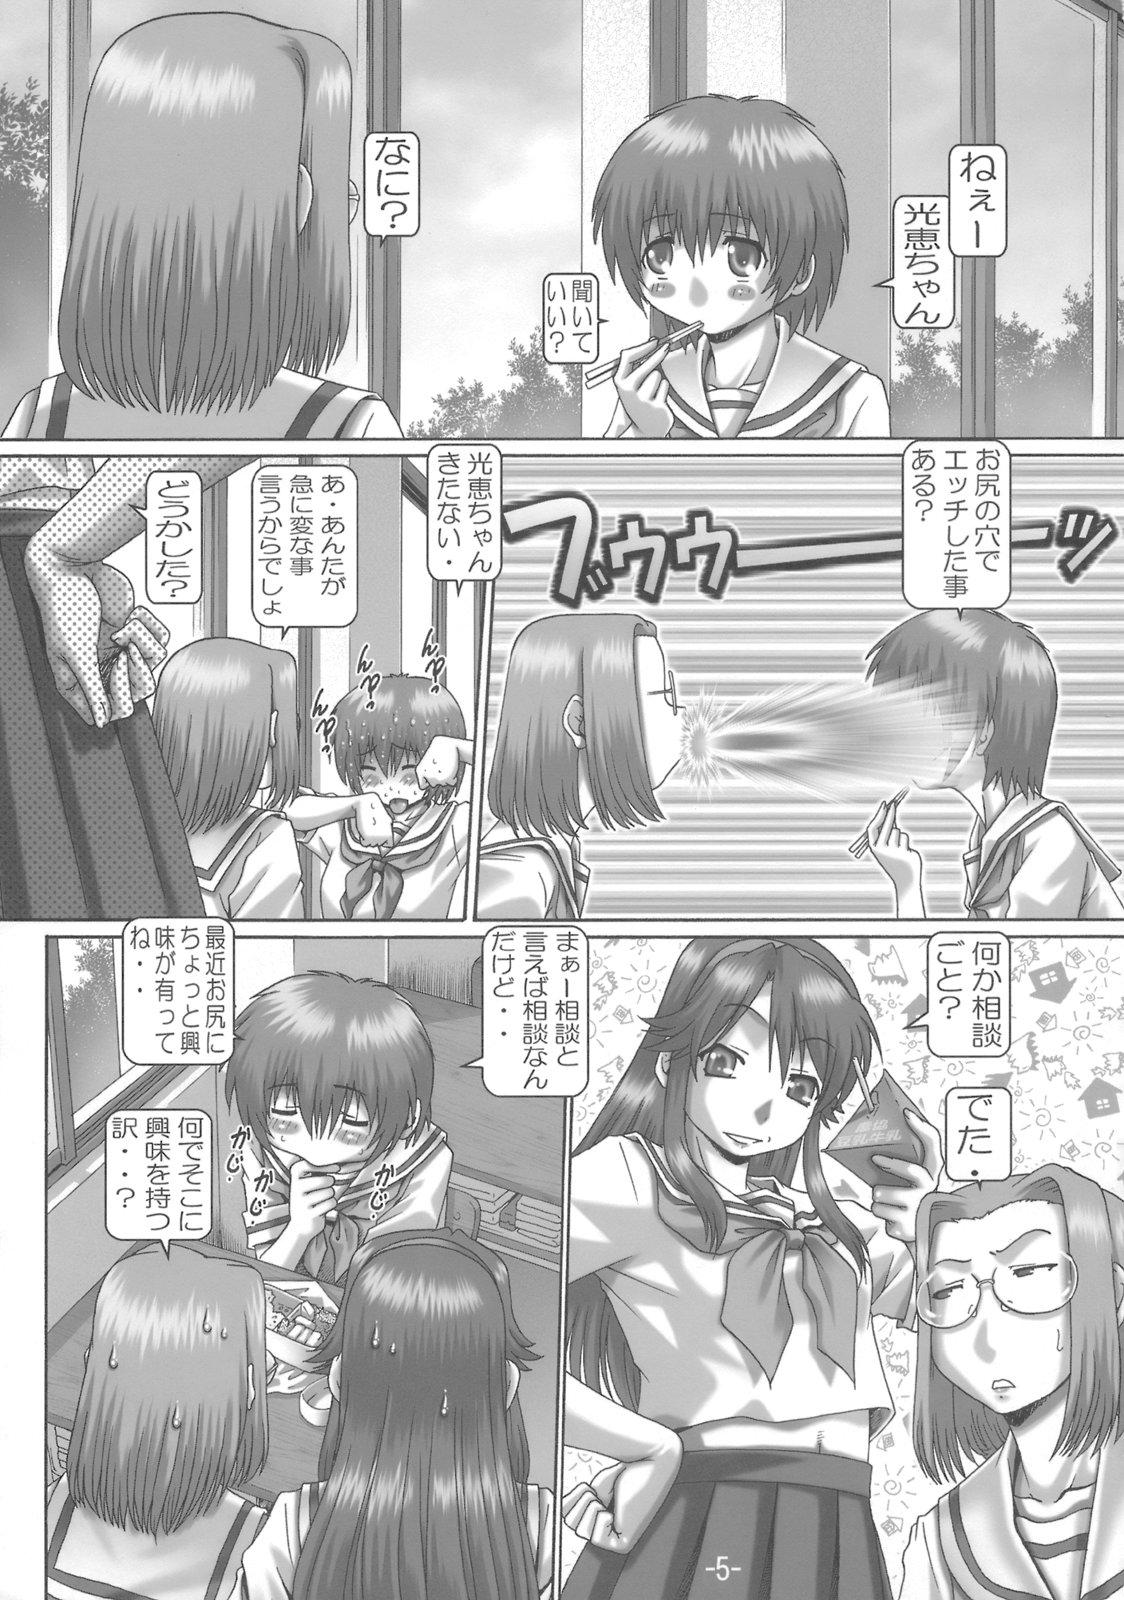 Gayfuck EMPIRE HARD CORE 6 - Fate stay night The melancholy of haruhi suzumiya Gundam seed destiny Gundam seed Kamichu Stepbrother - Page 4